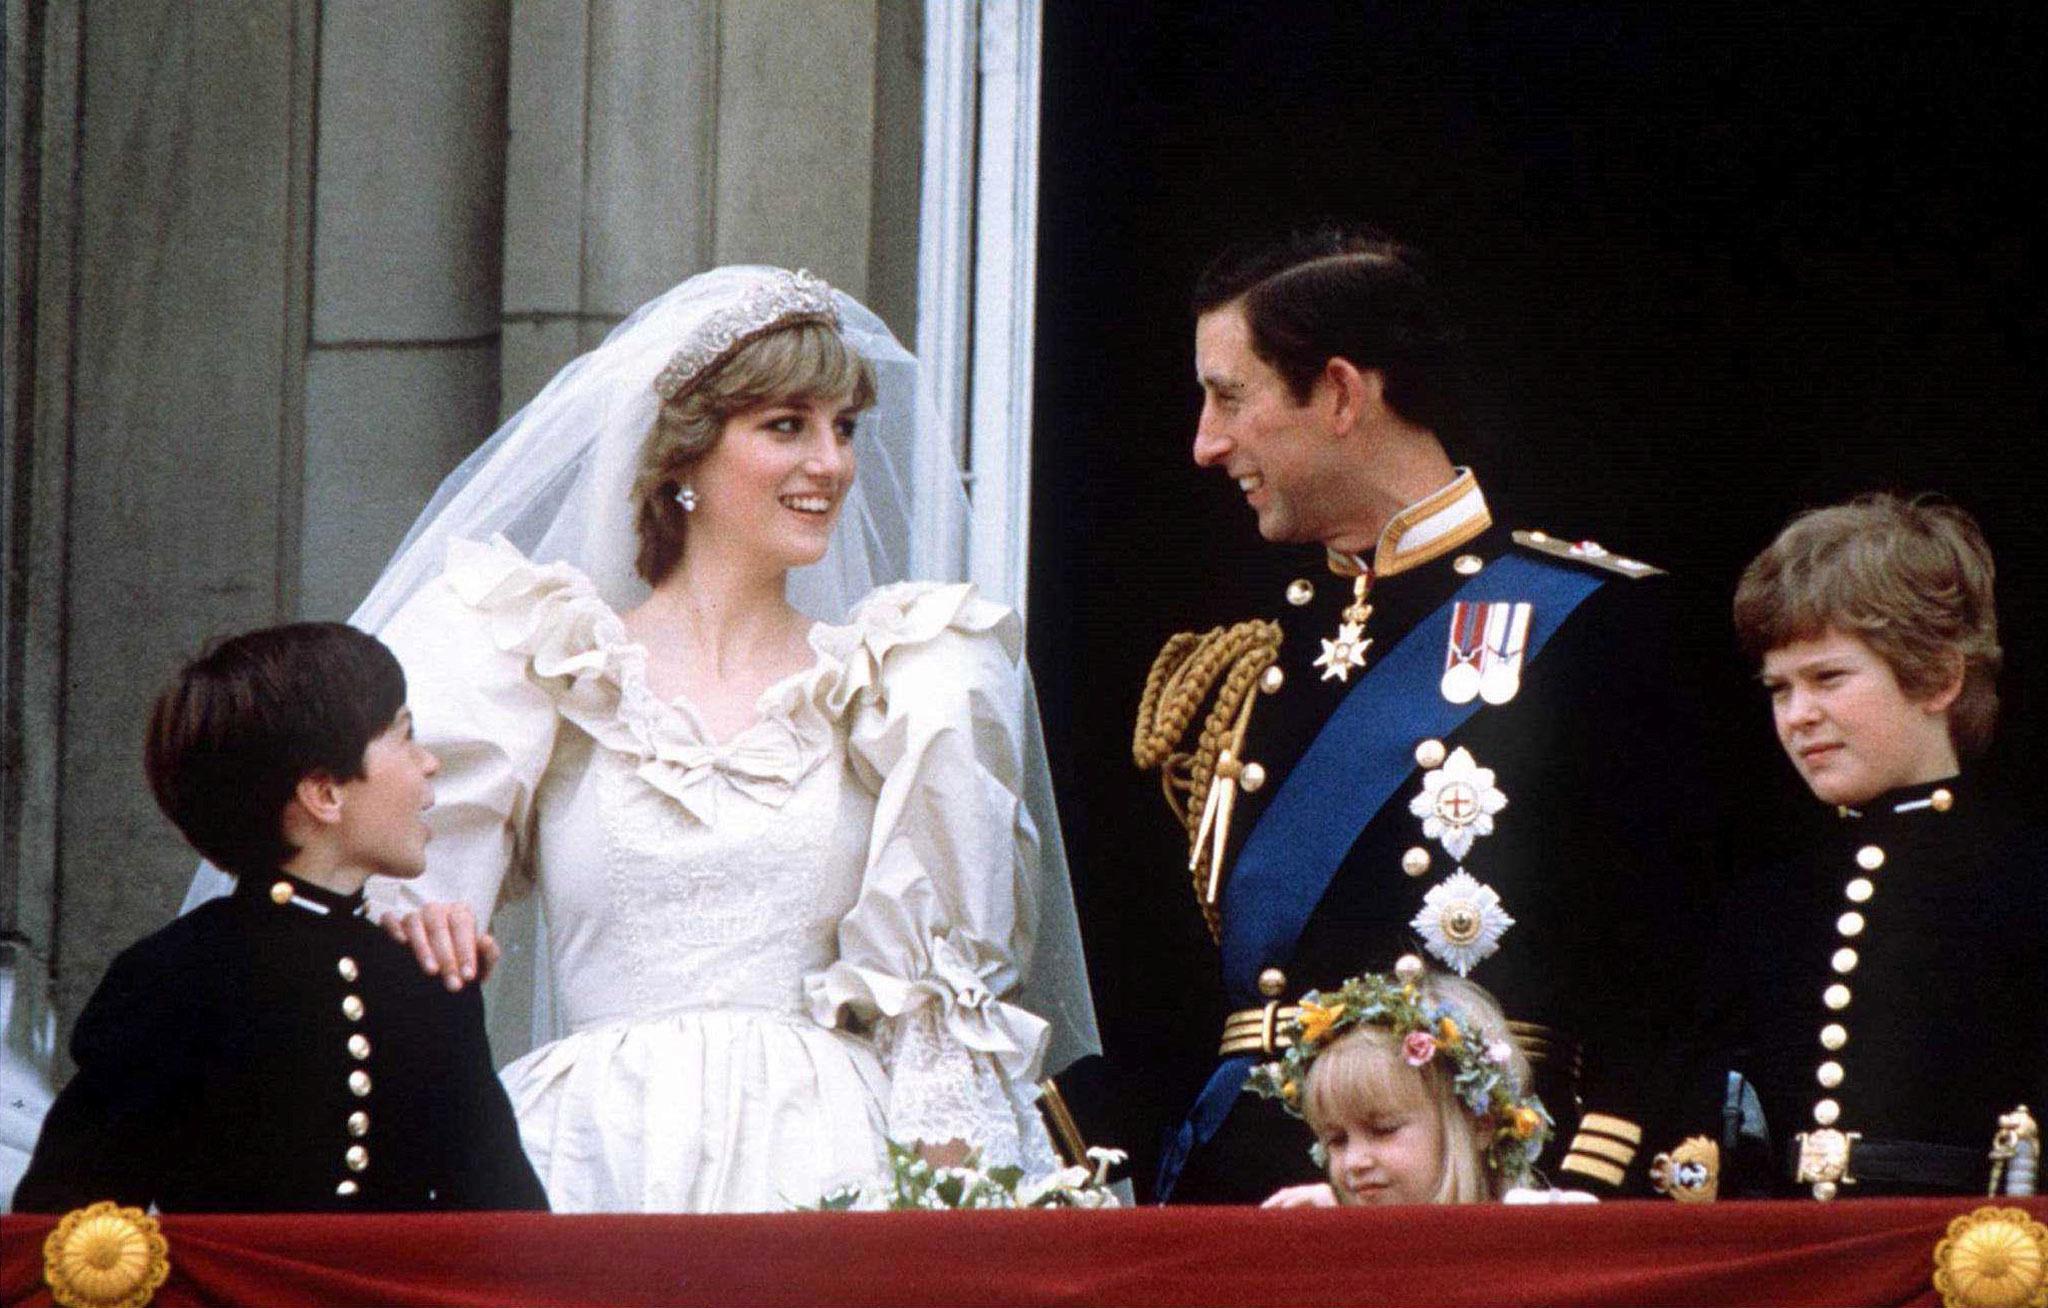 RUBINBRYLLUP: I dag hadde det vært prins Charles og prinsesse Diana sitt rubinbryllup, hvis de fortsatt hadde vært gift. Paret skilte seg i 1996, ett år før prinsessen døde i en bilulykke. 